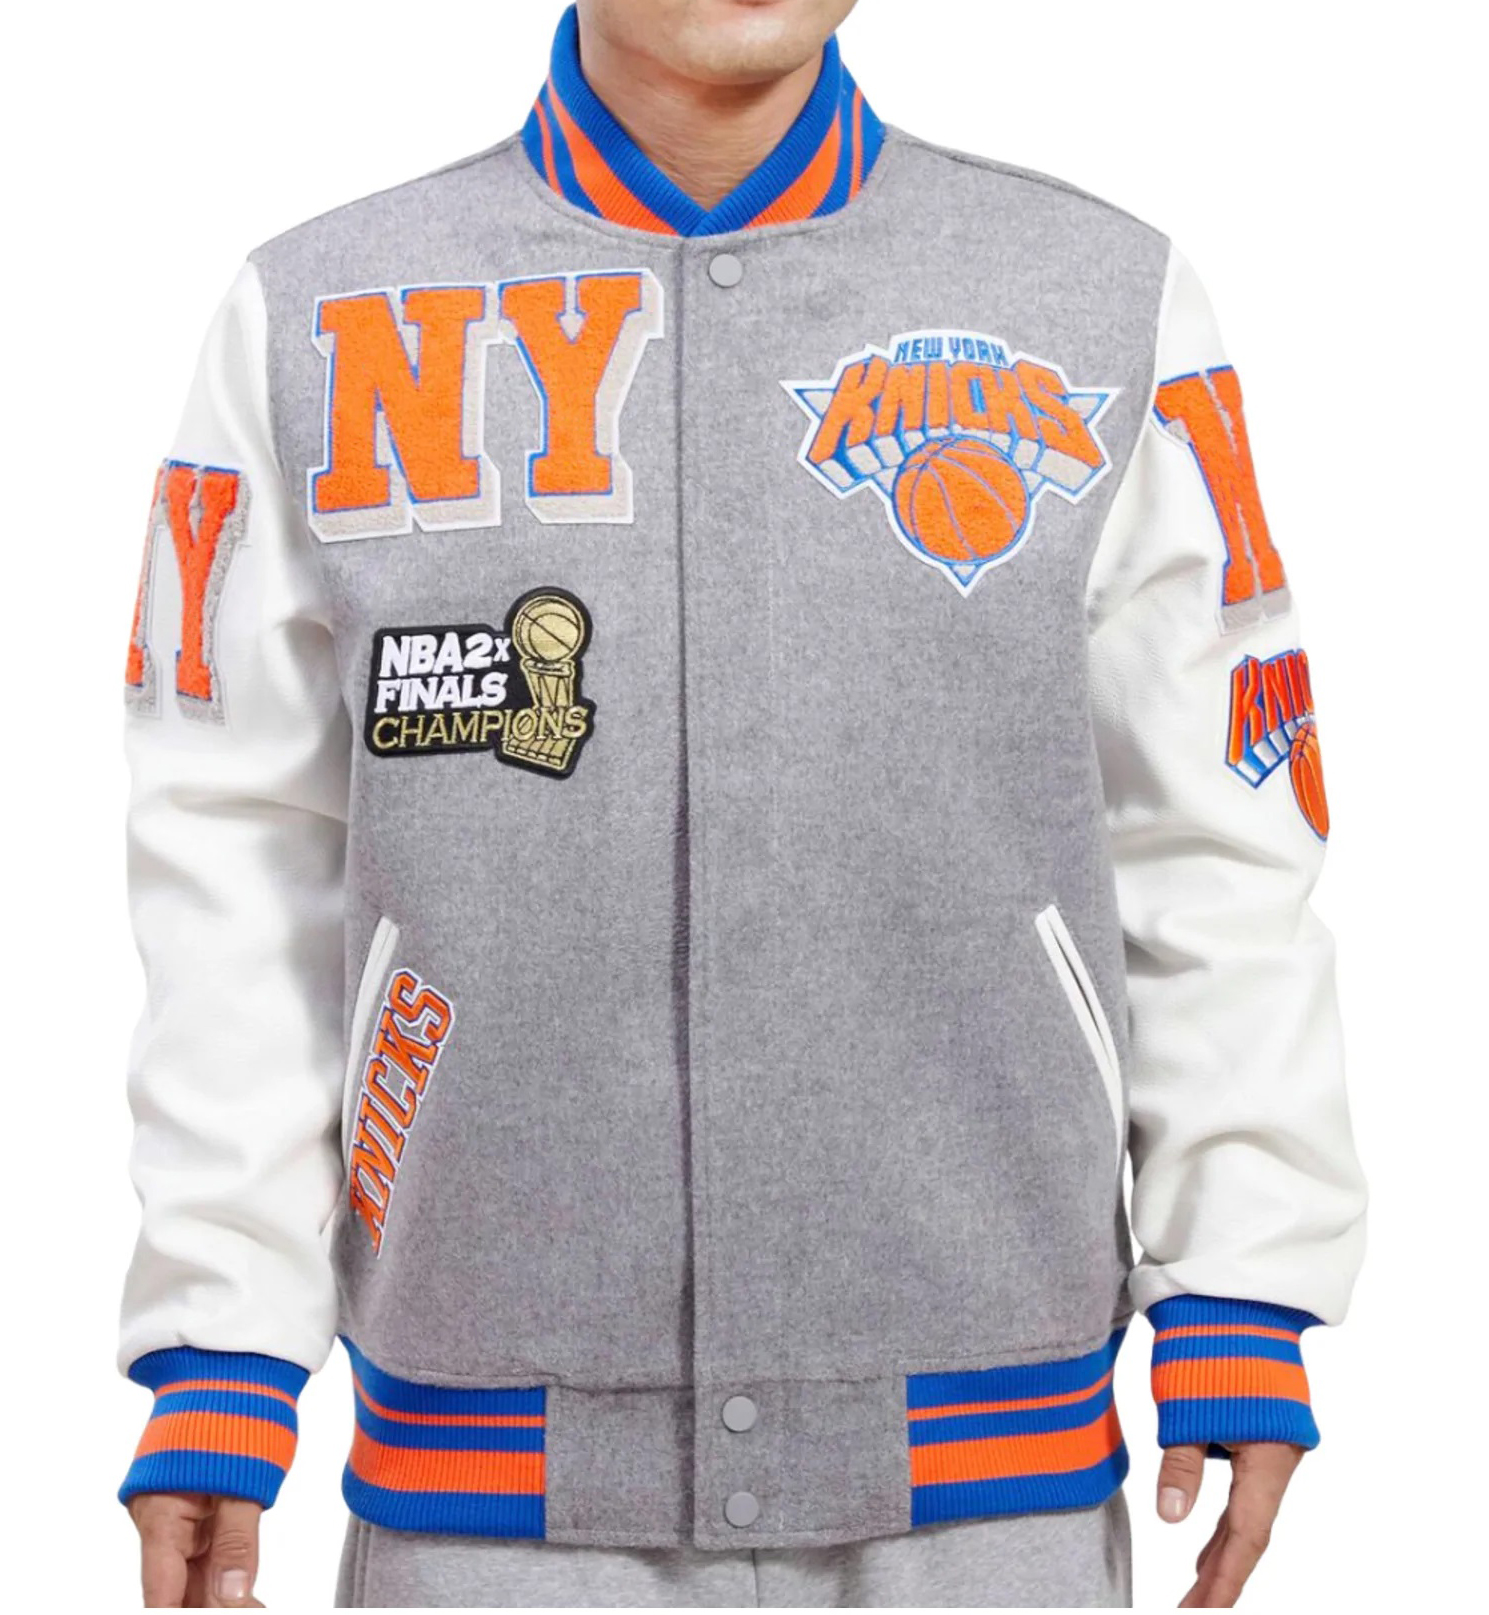 New York Knicks Jacket  NY New York Knicks Bomber Jacket